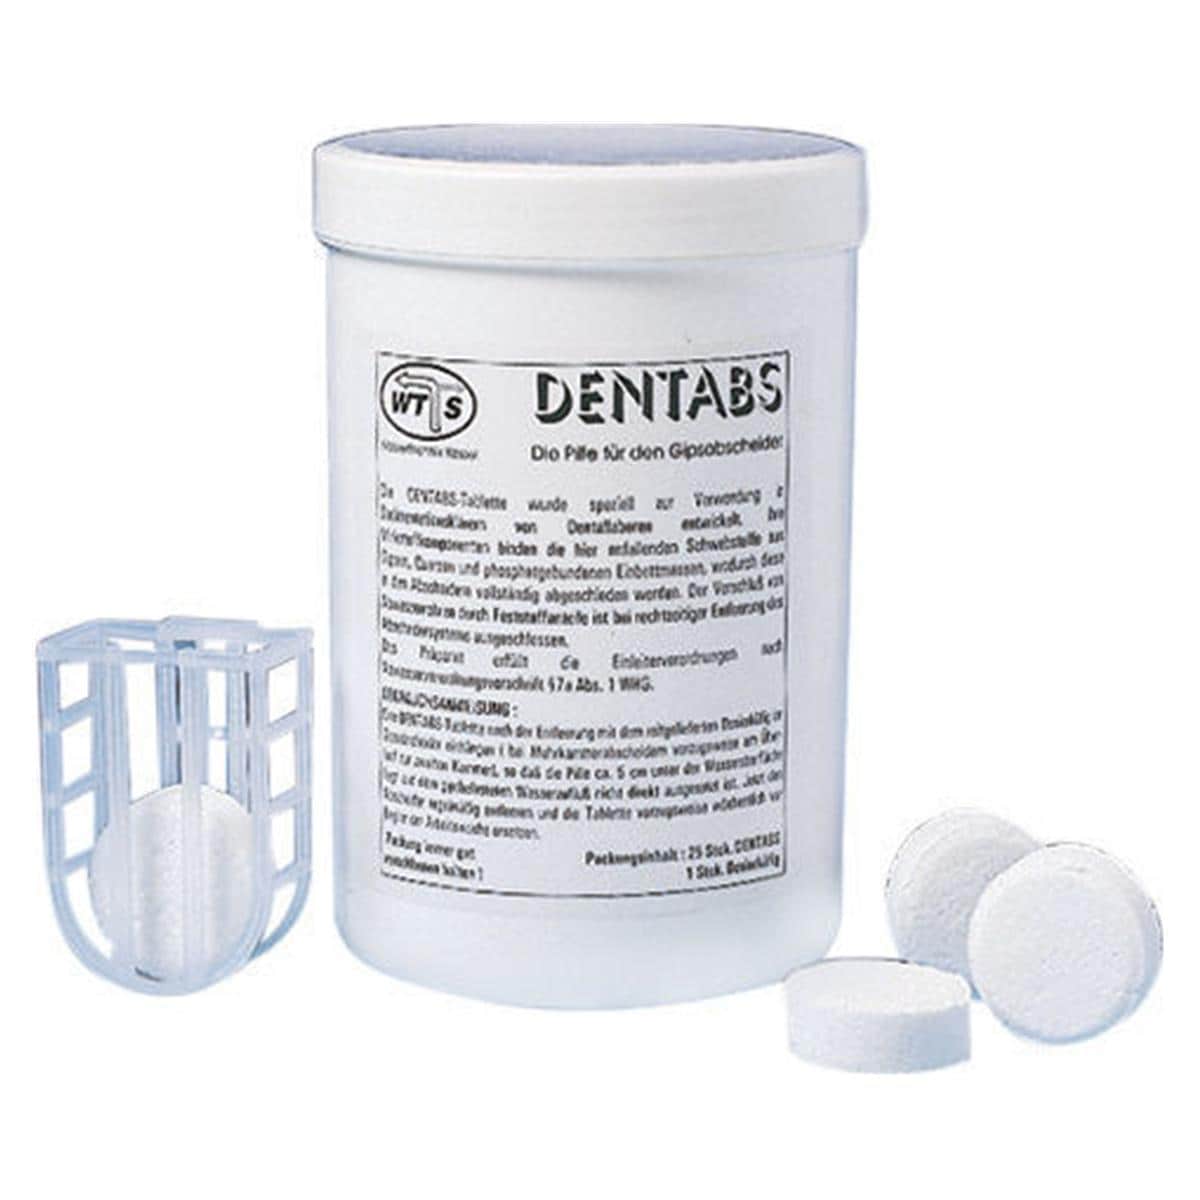 Dentabs - Packung 2 Stück und 1 Einhängekorb